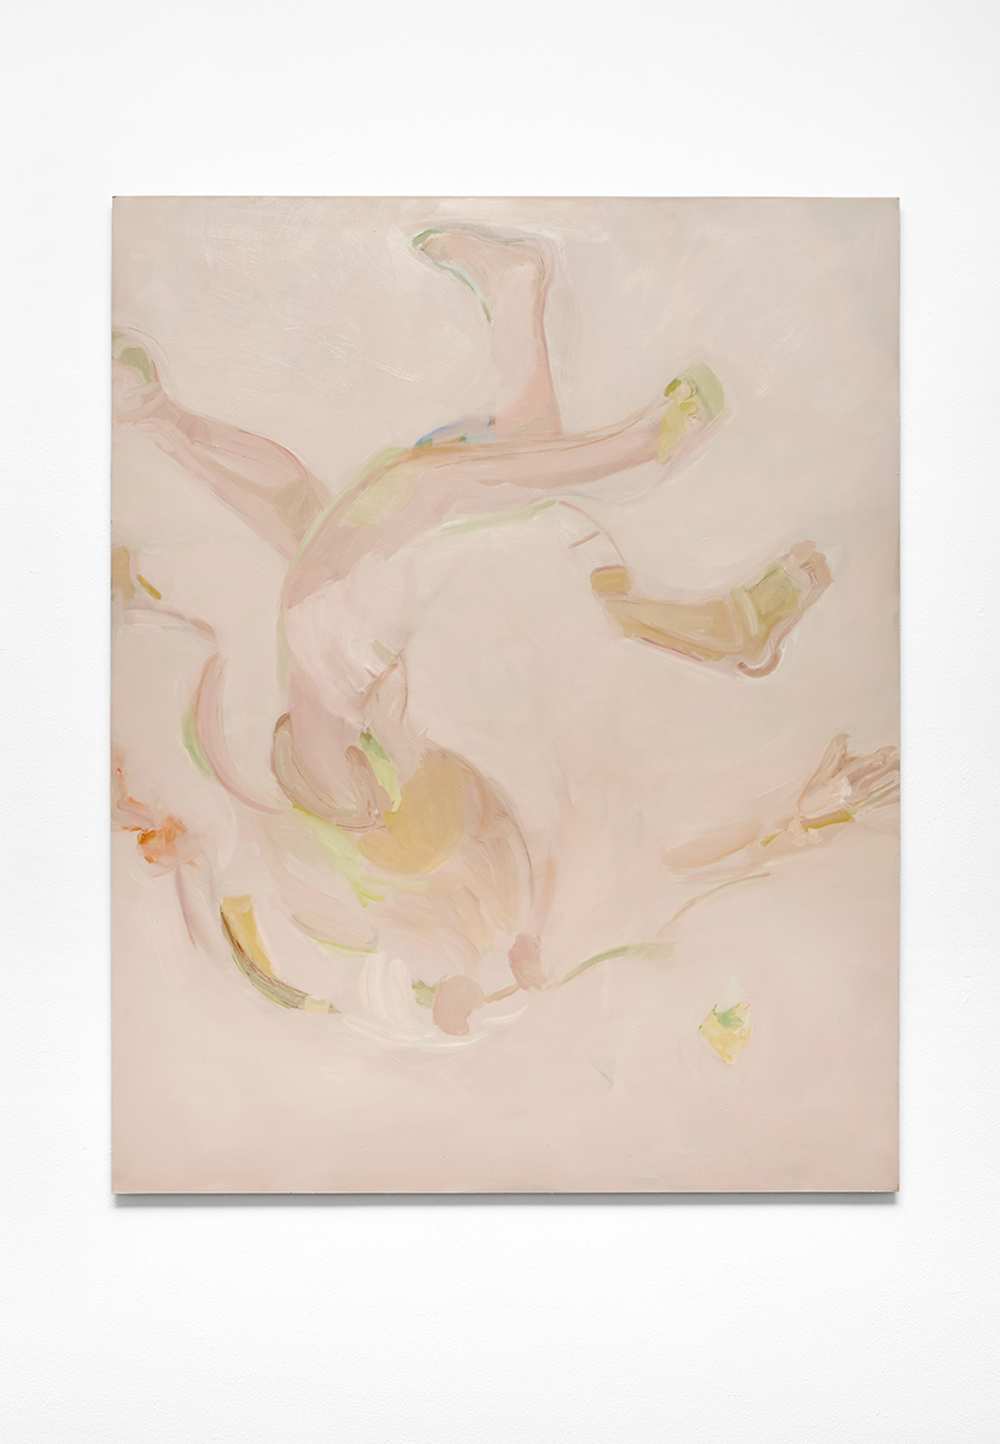 Beatrice Meoni, Caduta, 2019, olio su tavola, cm 150x120